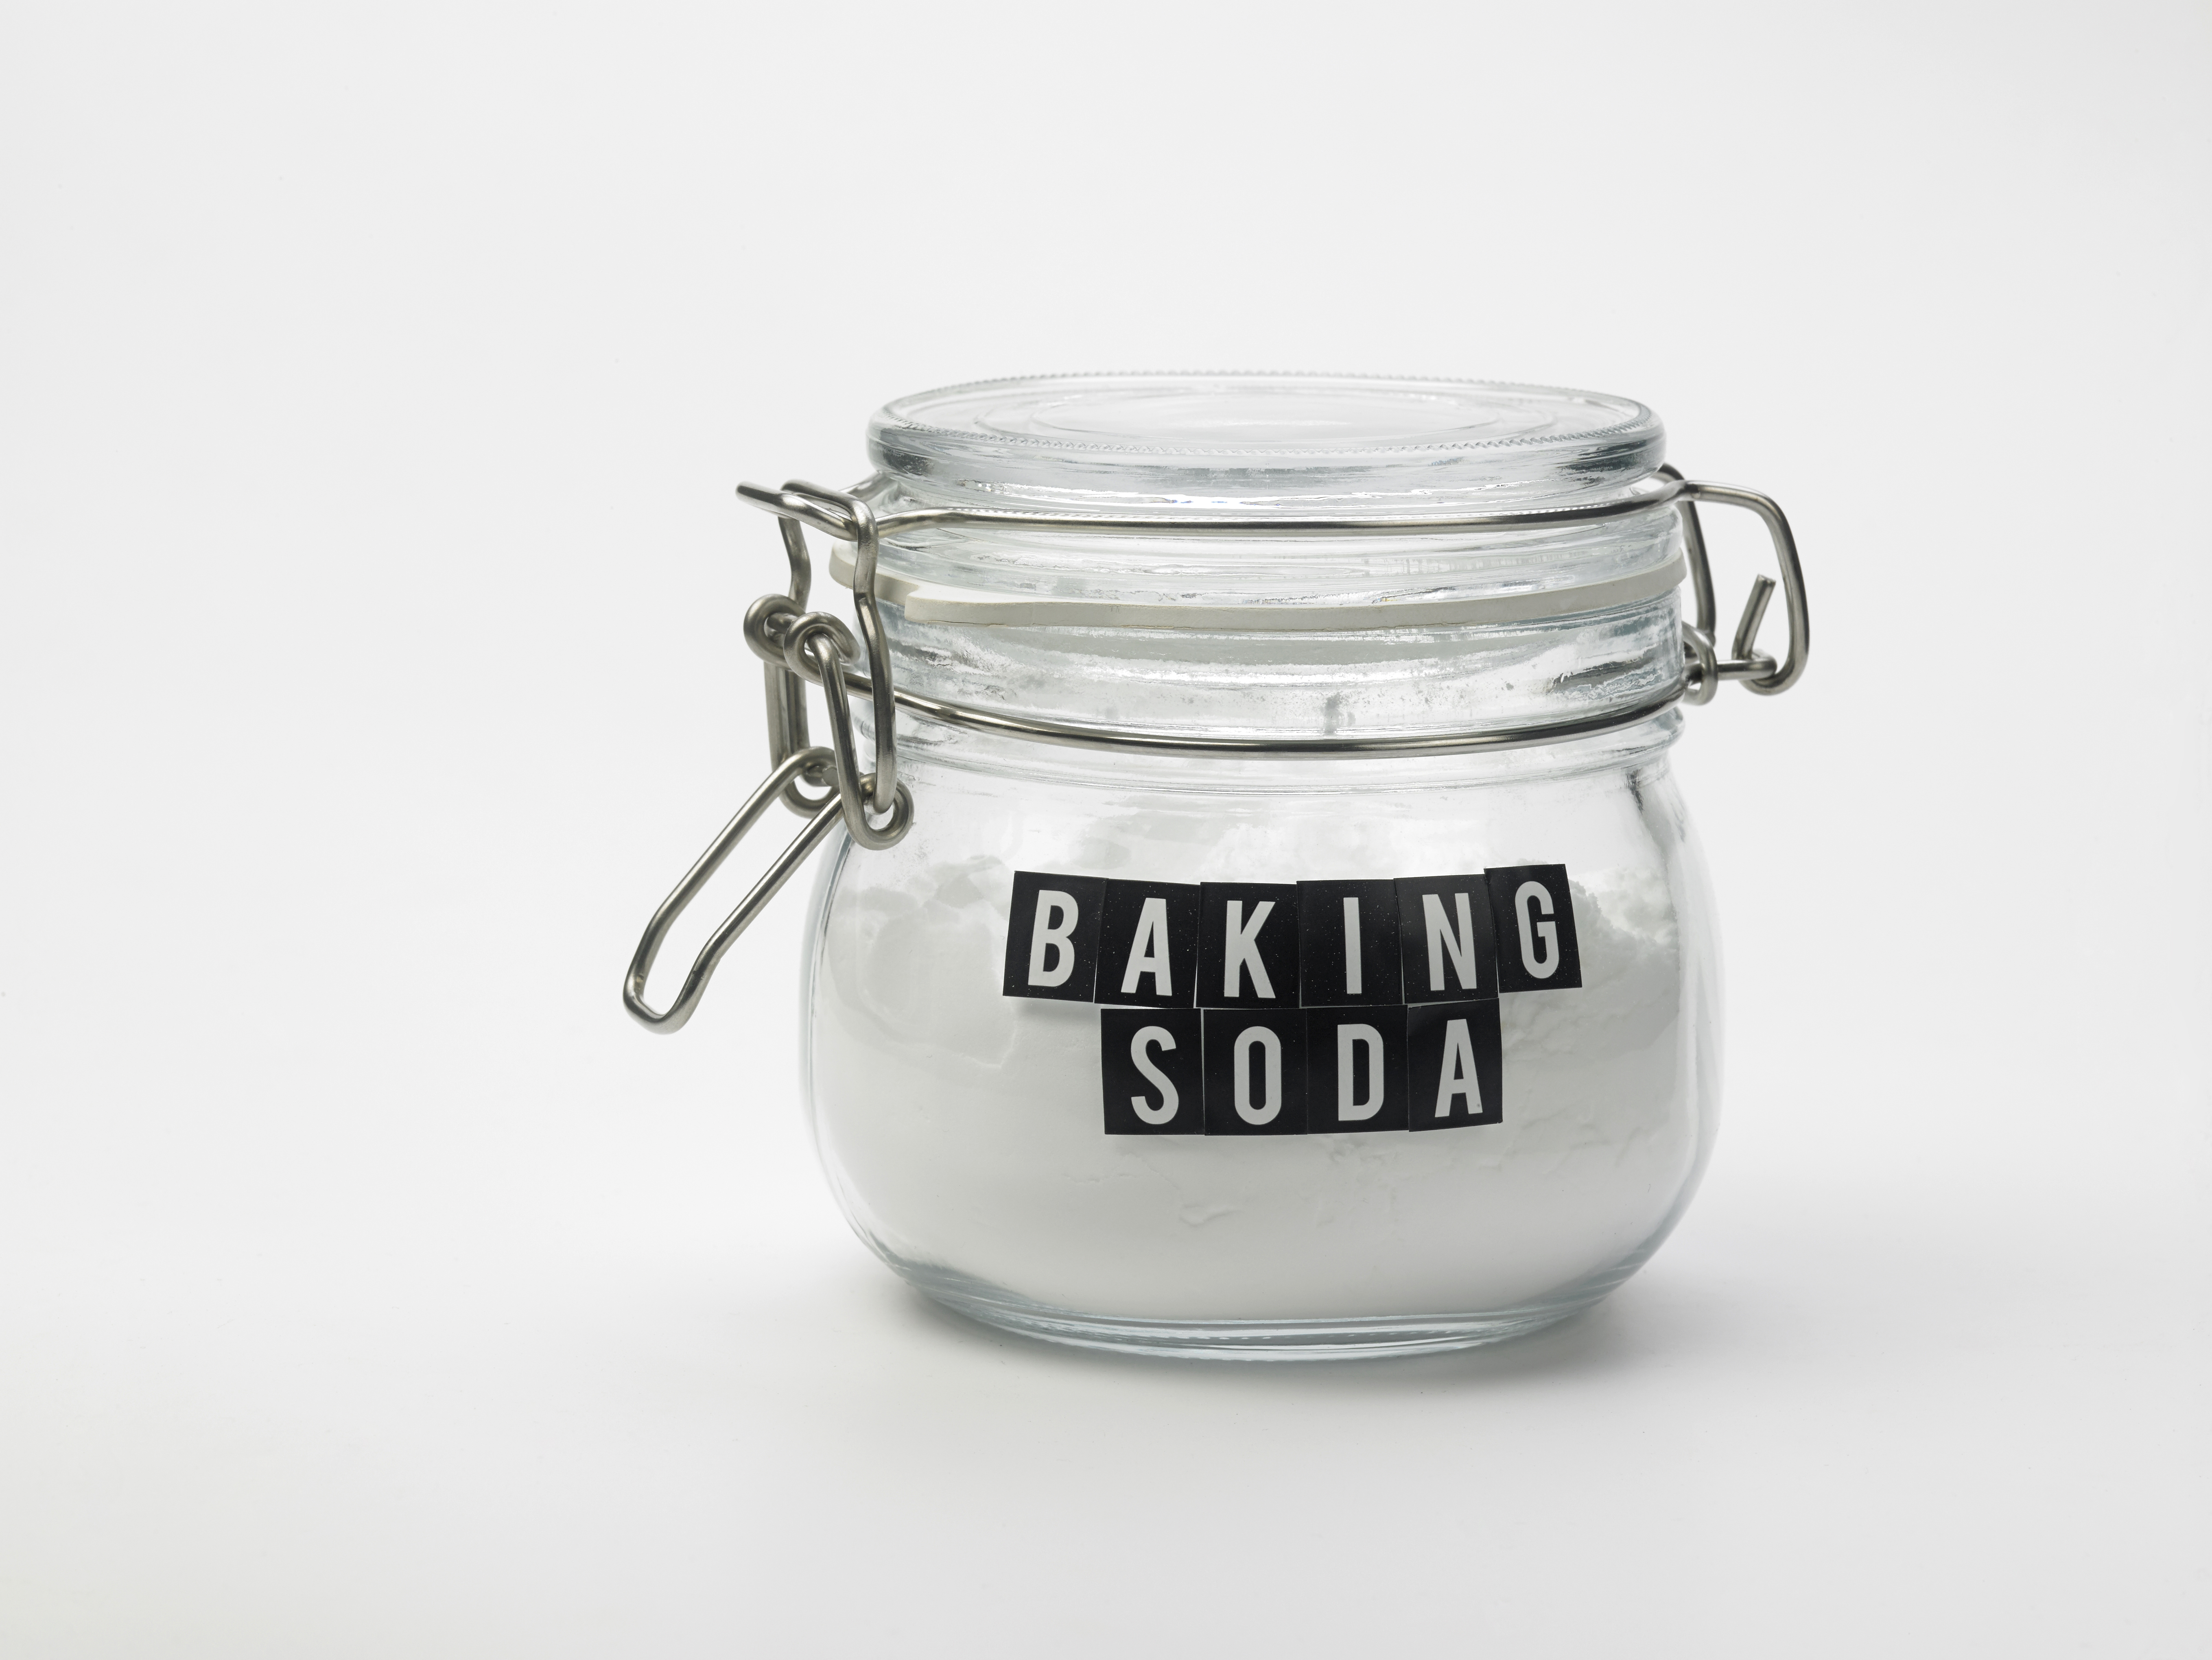 A jar of baking soda | Source: Shutterstock